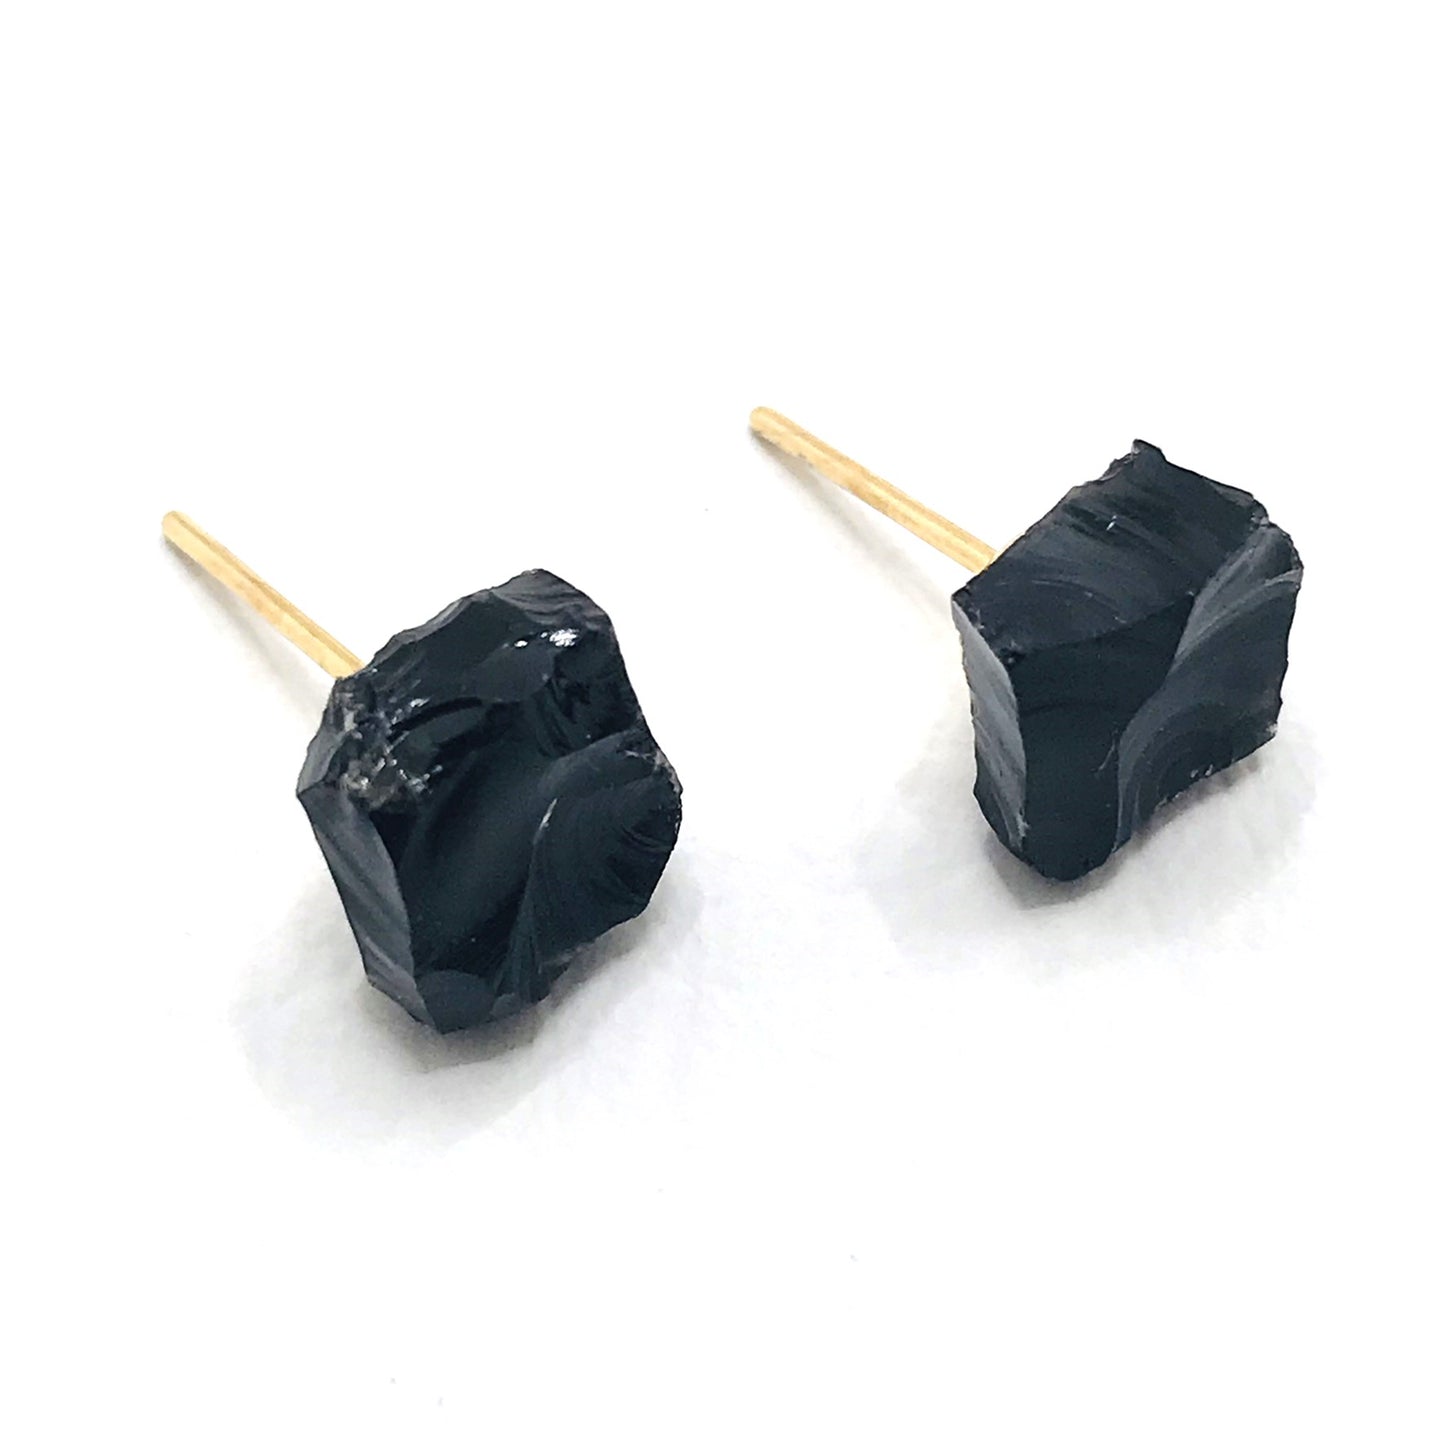 Raw Gemstone Cubes Earring - Black Obsidian- Small